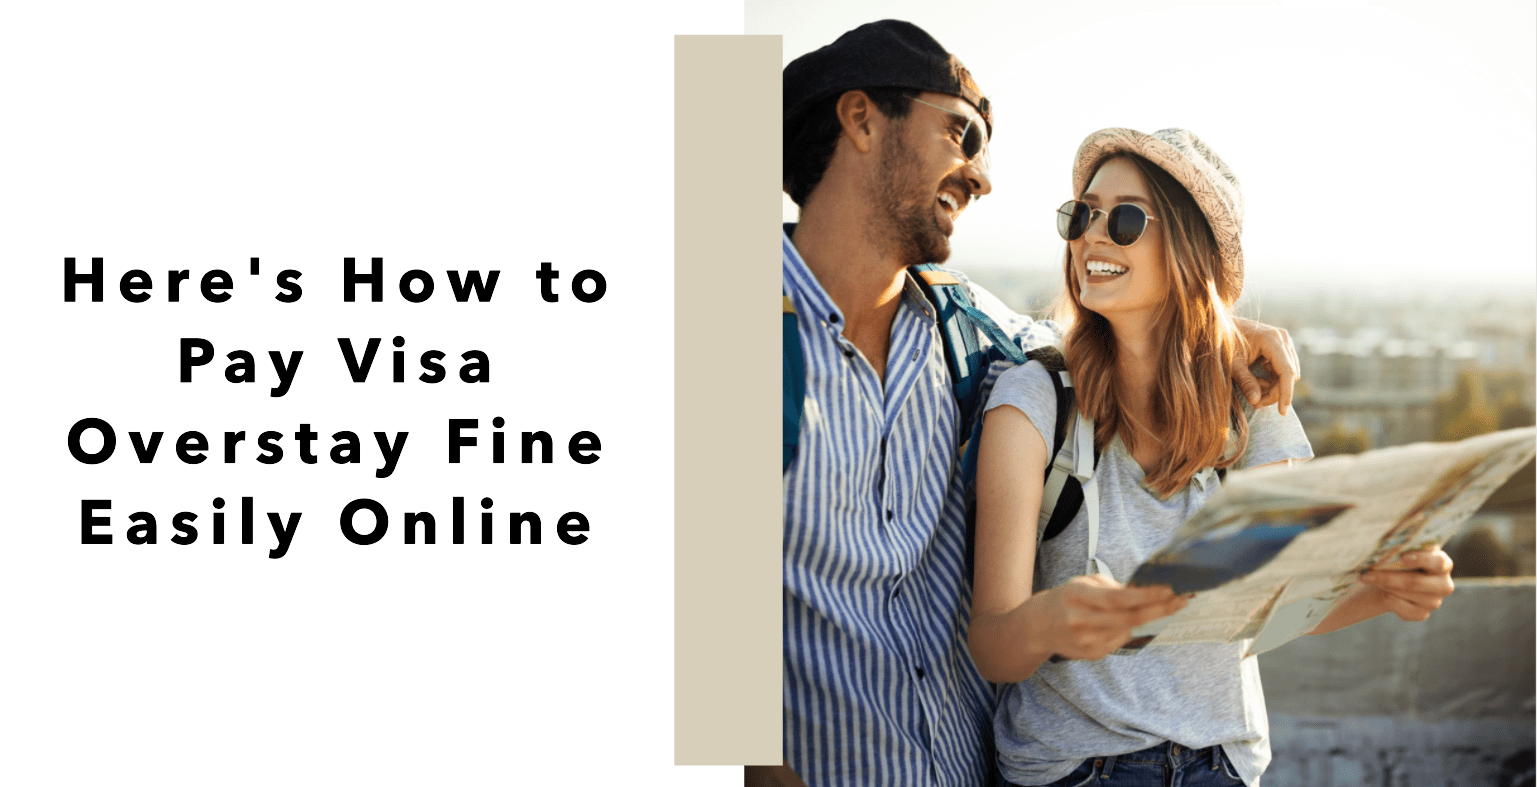 Pay visa overstay fine